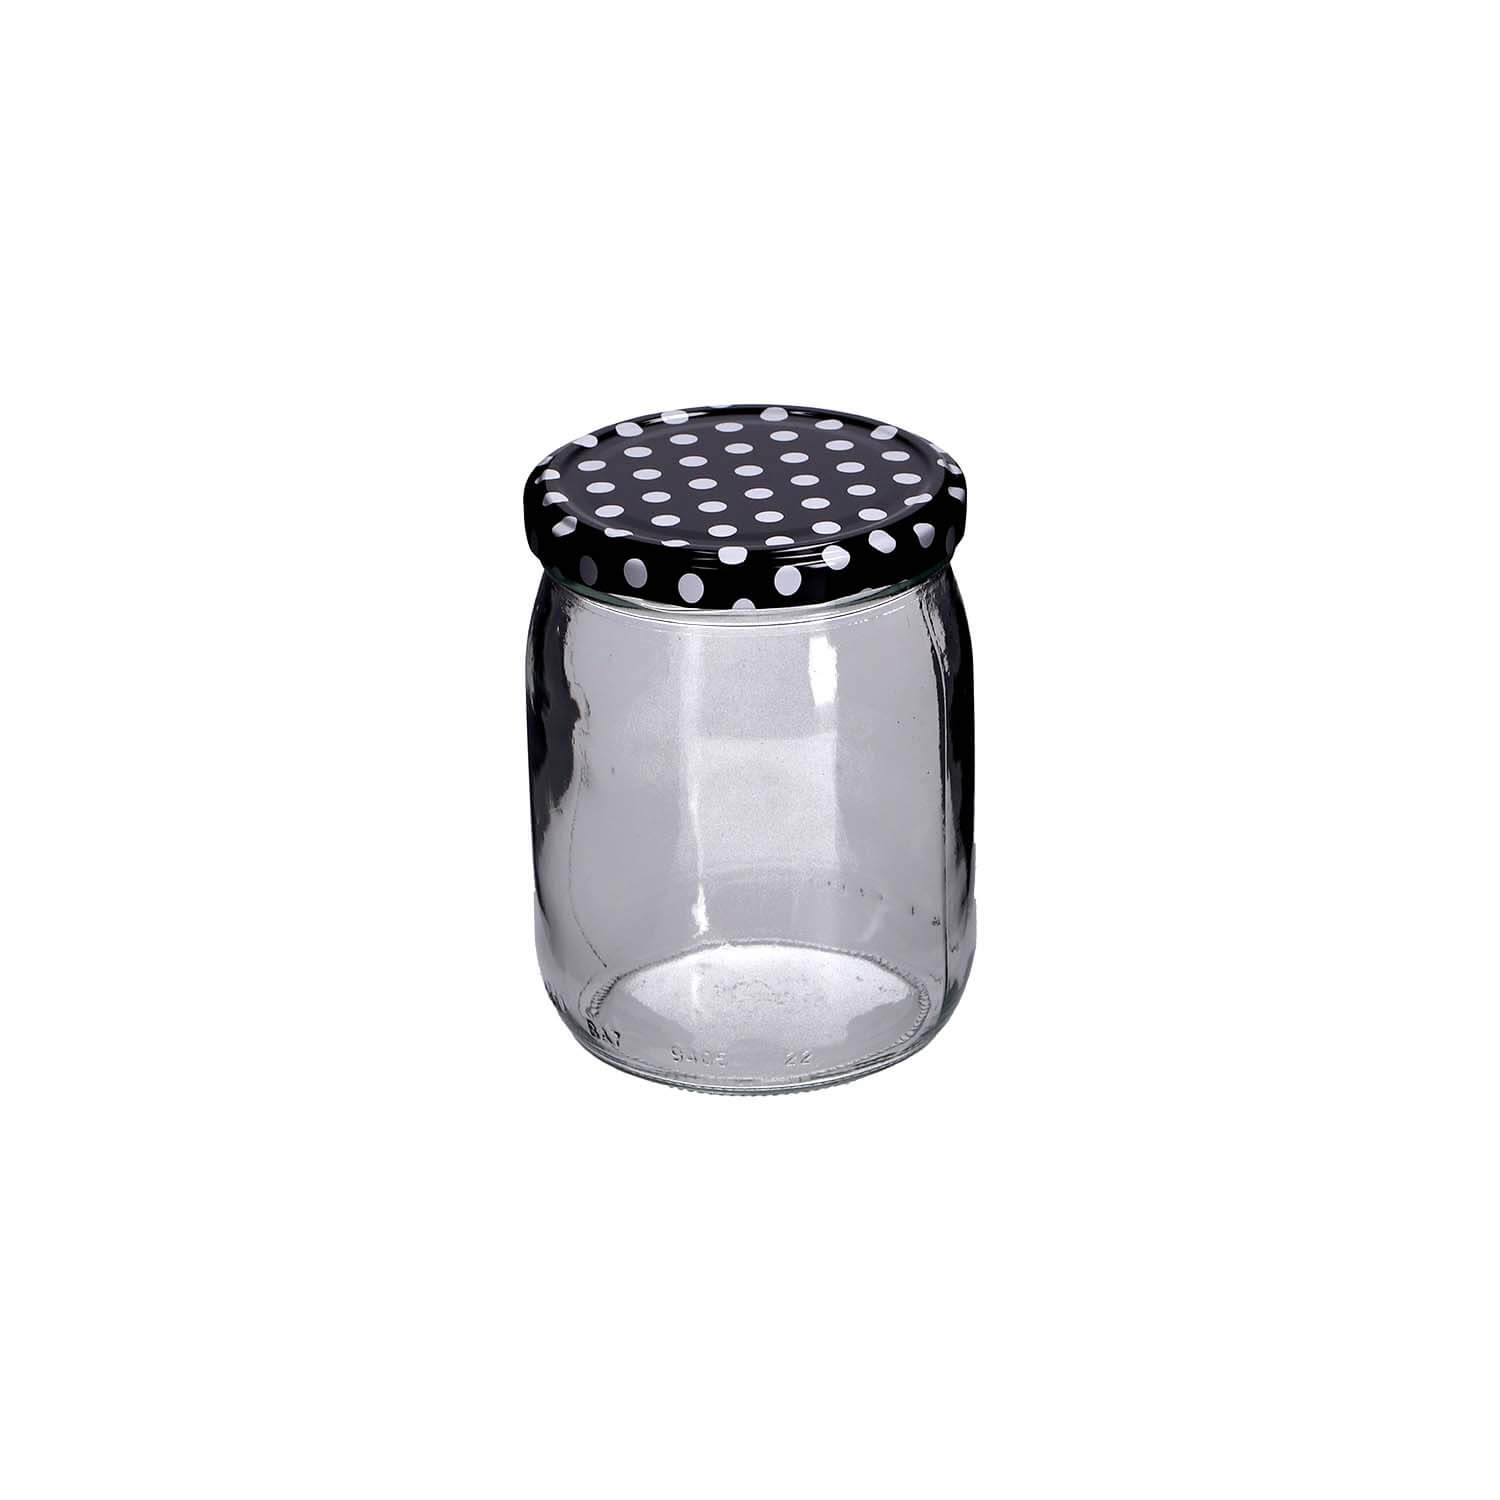 Einmachglas mit Schraubdeckel 540 ml, 4er Set, rosa/schwarz/weiß